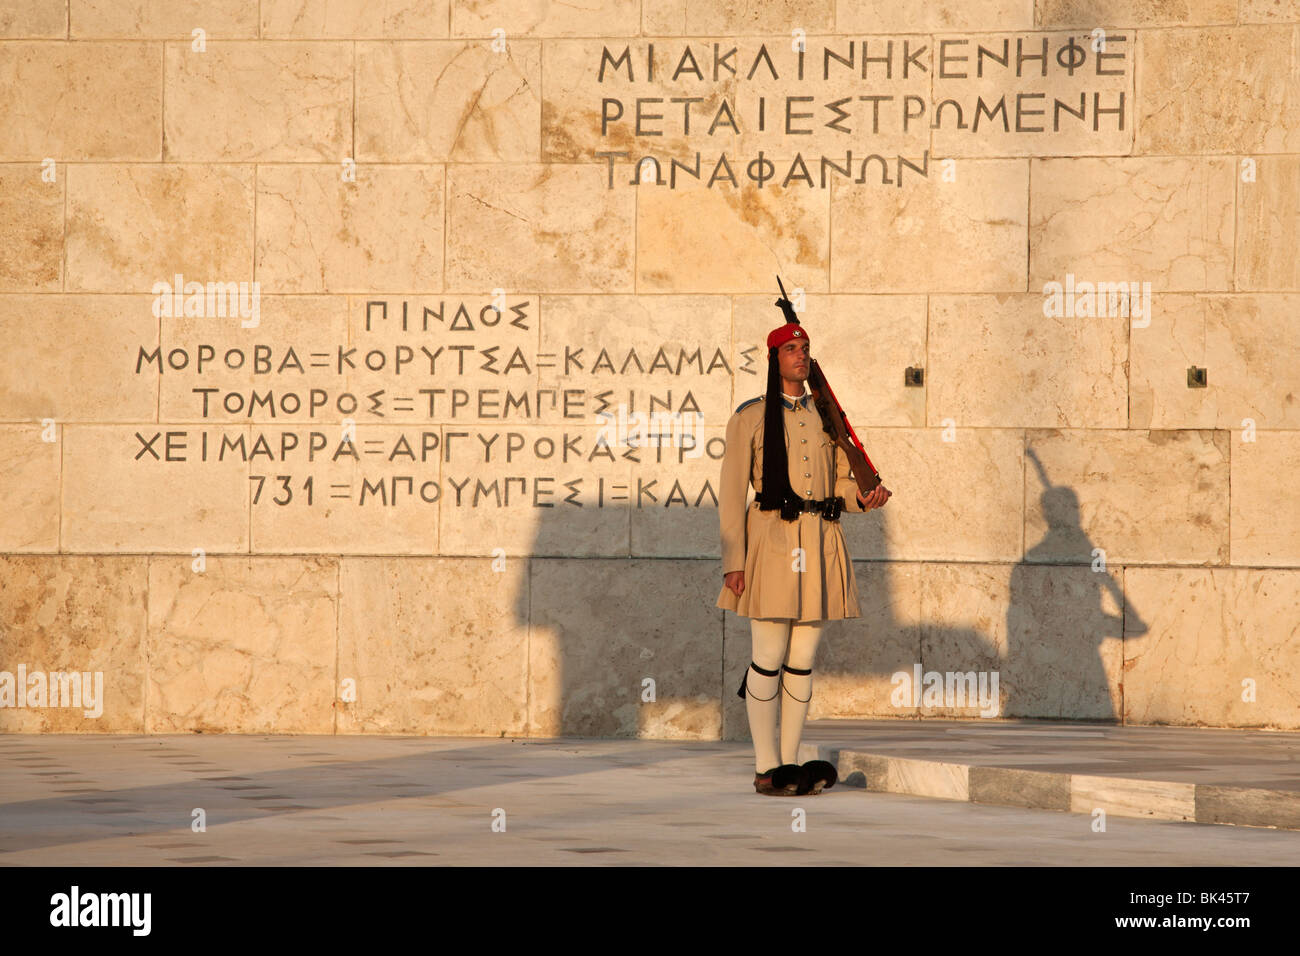 Evzone custodendo il parlamento greco ad Atene accanto a Tucidide citazioni da Pericle orazione funebre Foto Stock